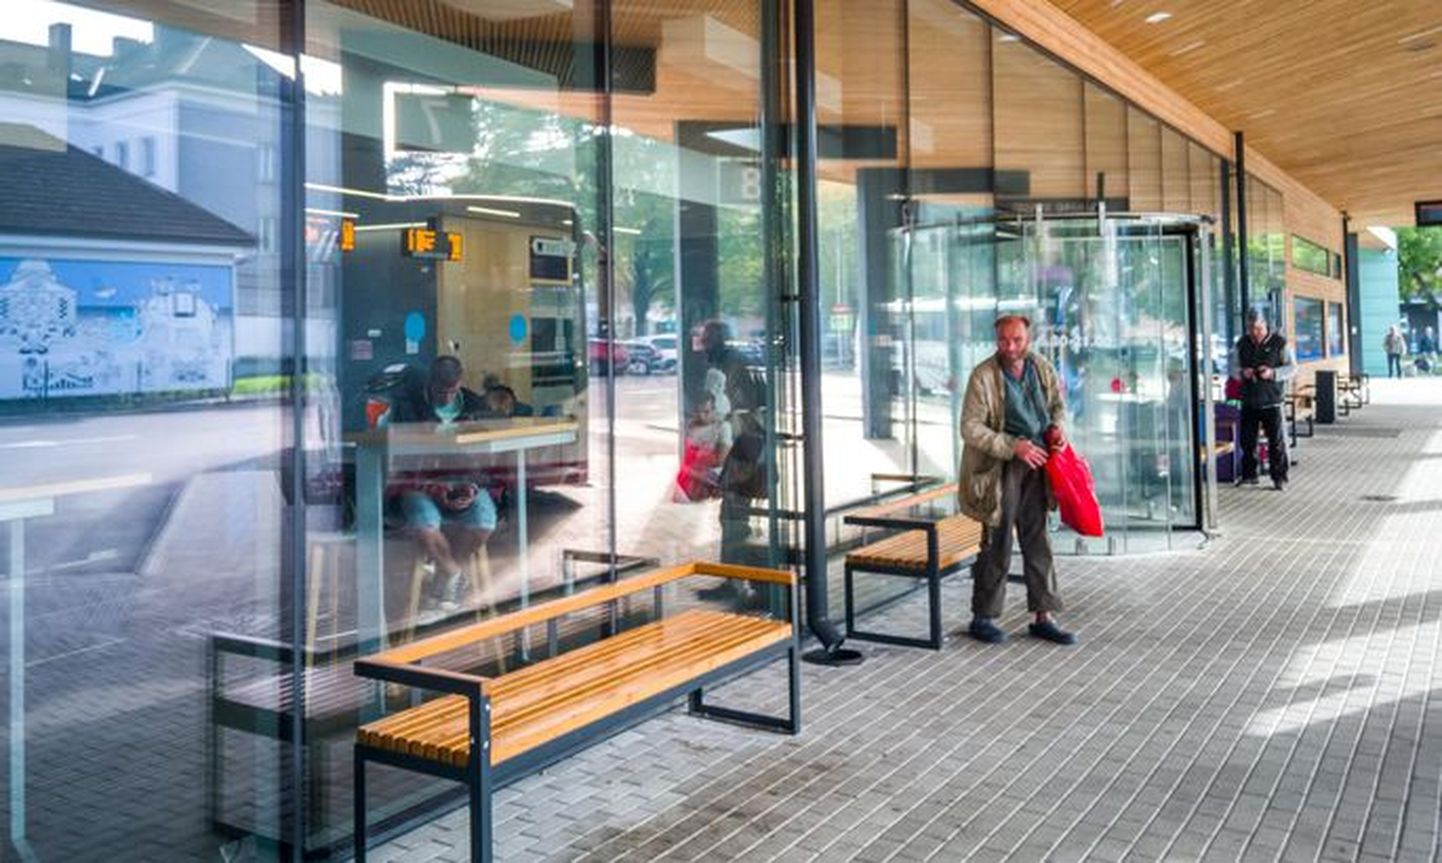 Обстановкой нового автовокзала чаще наслаждаются бездомные.